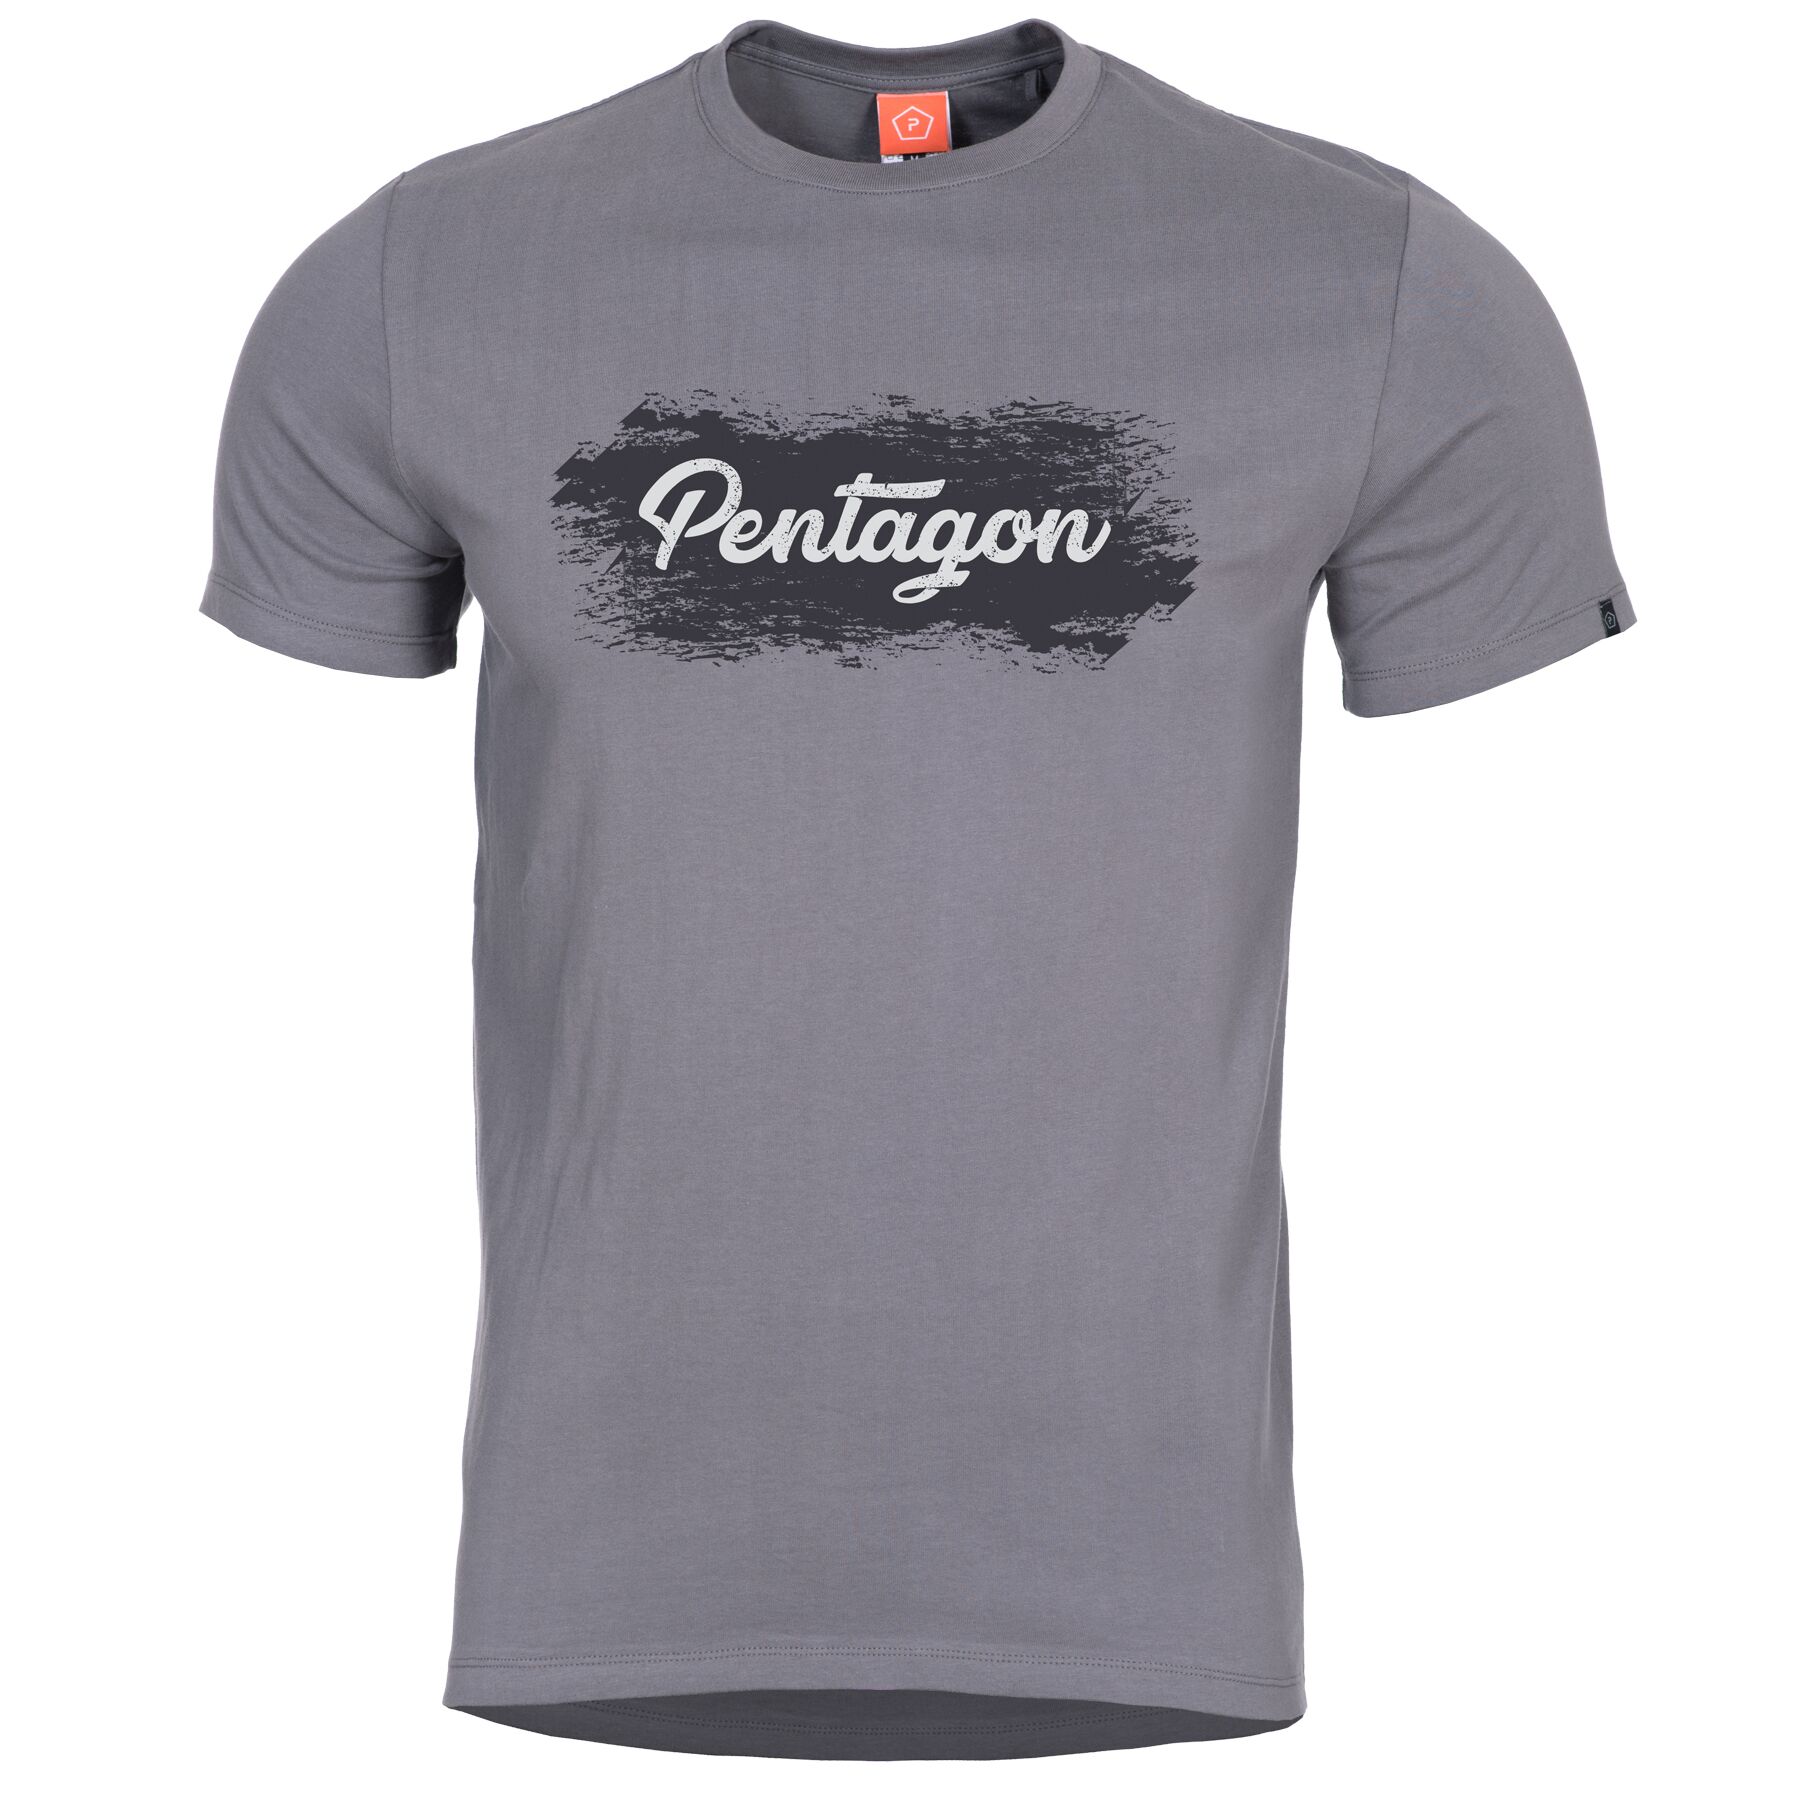 Tričko Pentagon Grunge s potlačou - šedé